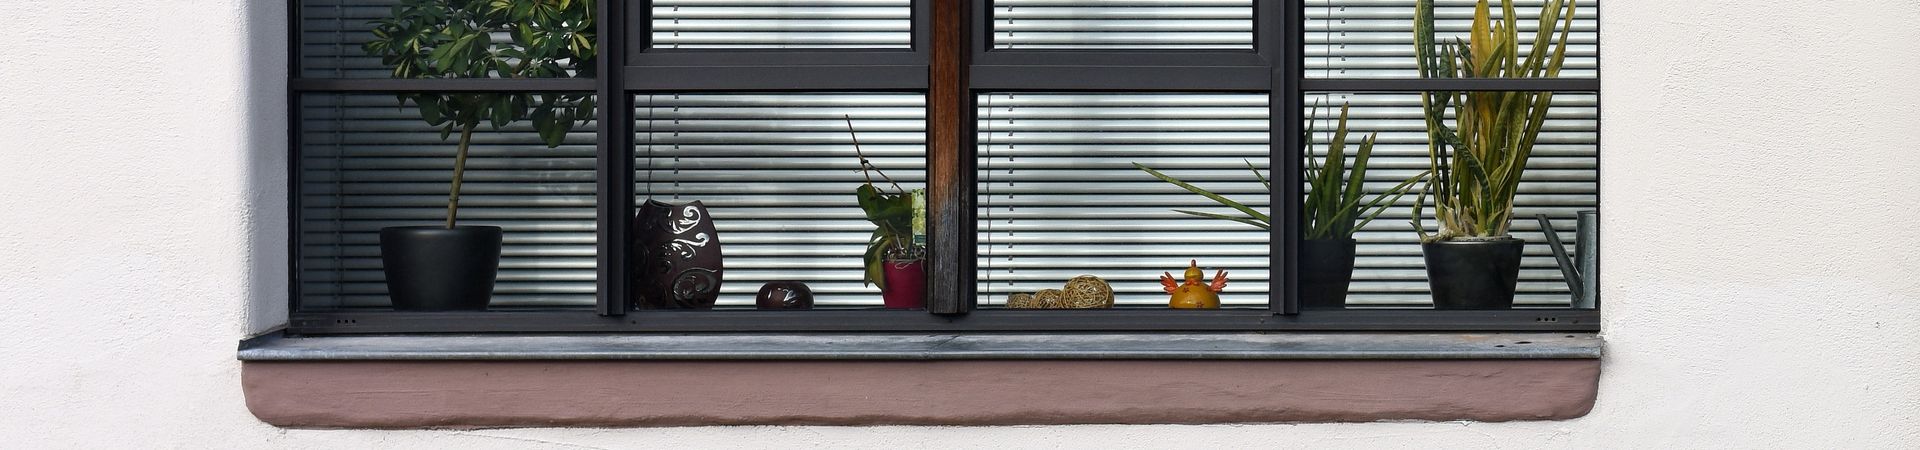 Fensterbrett mit Pflanzen und Ente